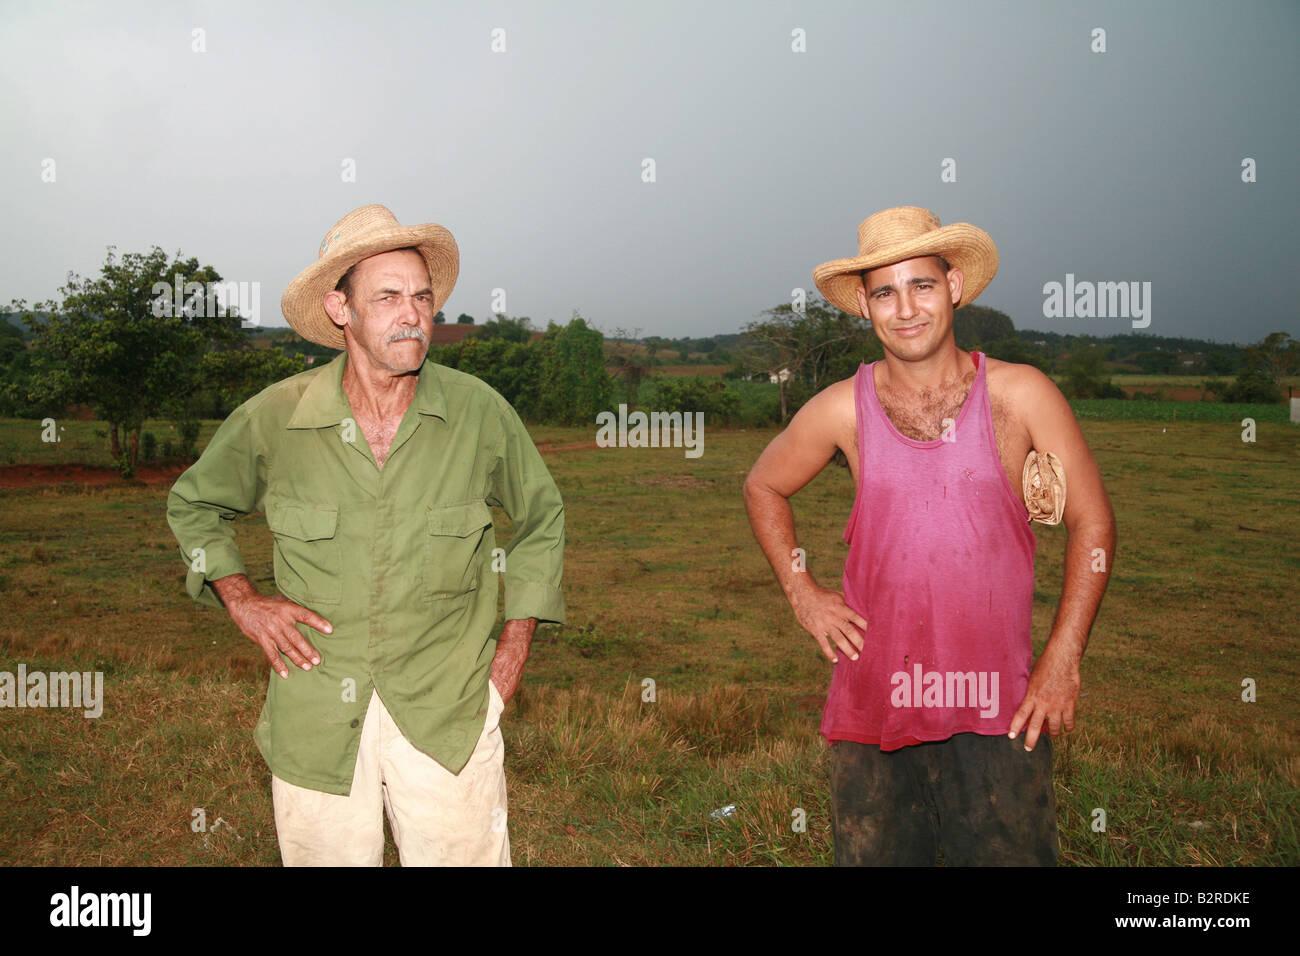 Deux travailleurs sur le terrain dans la province de Pinar del Río Viñales Cuba Amérique Latine Banque D'Images